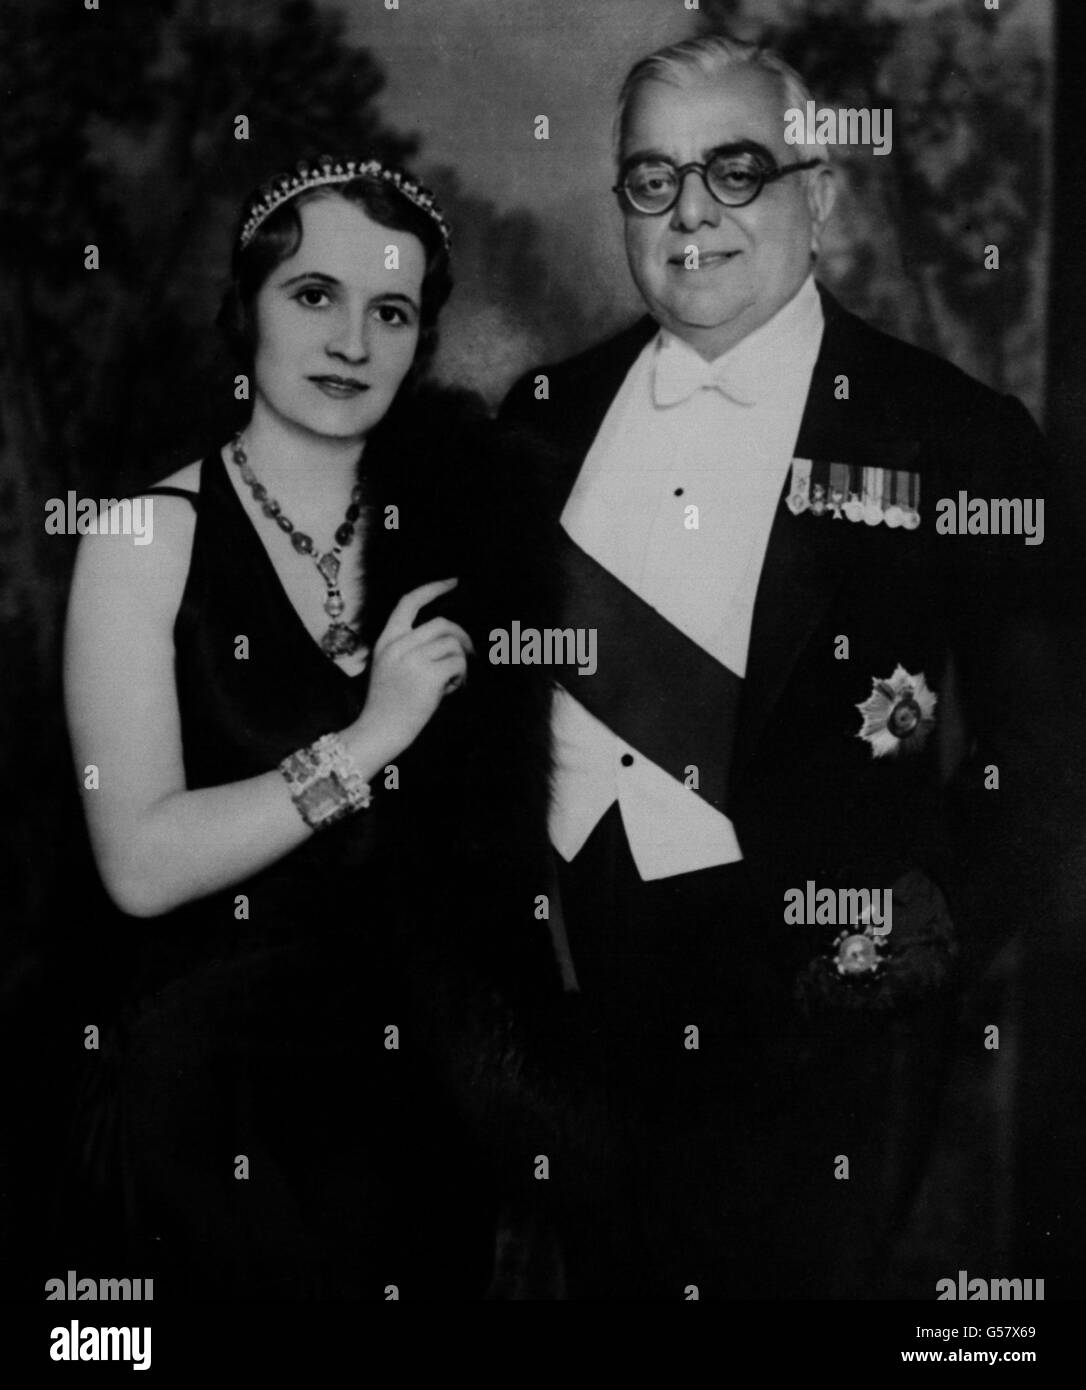 L'AGA KHAN 1932: Un ritratto posto dell'Aga Khan, il famoso sportivo indiano, con la sua moglie francese, la Begum Sultan. Foto Stock